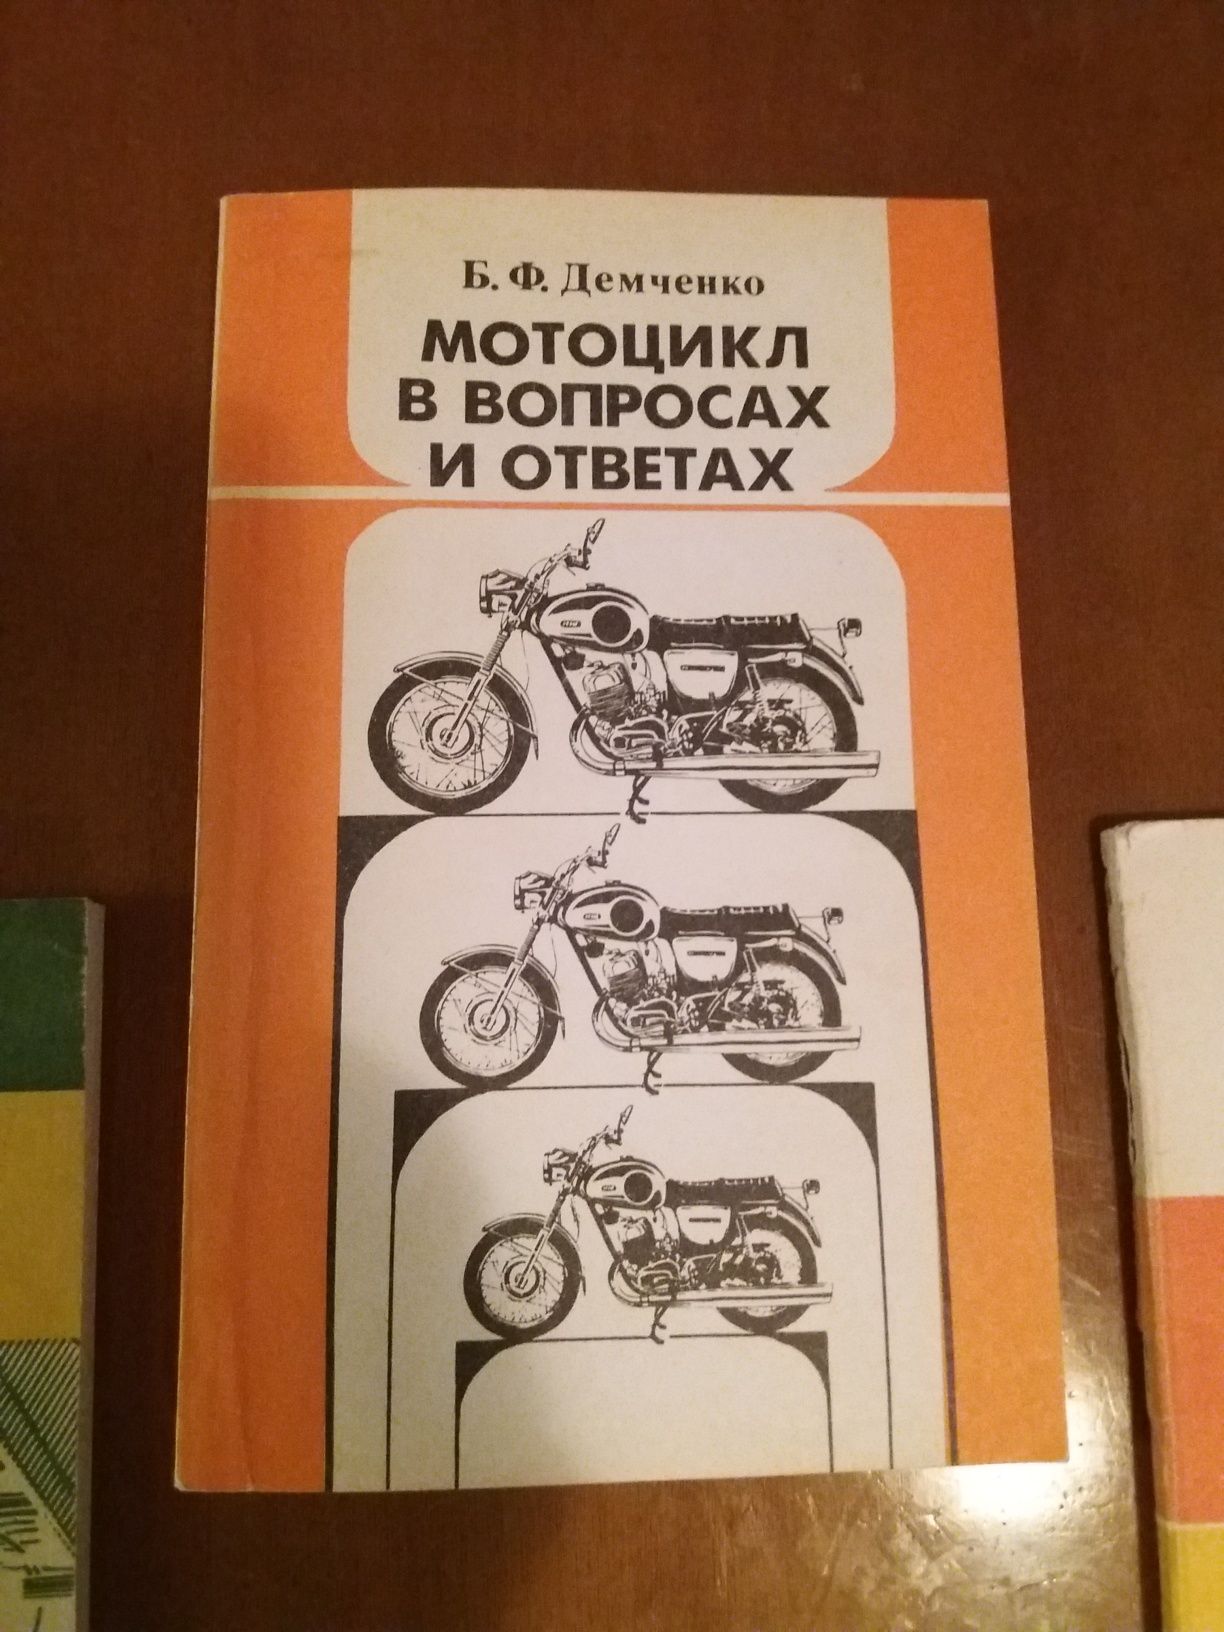 Ретро мото книги "Советы мотоциклистам, Азбука мотоциклиста"